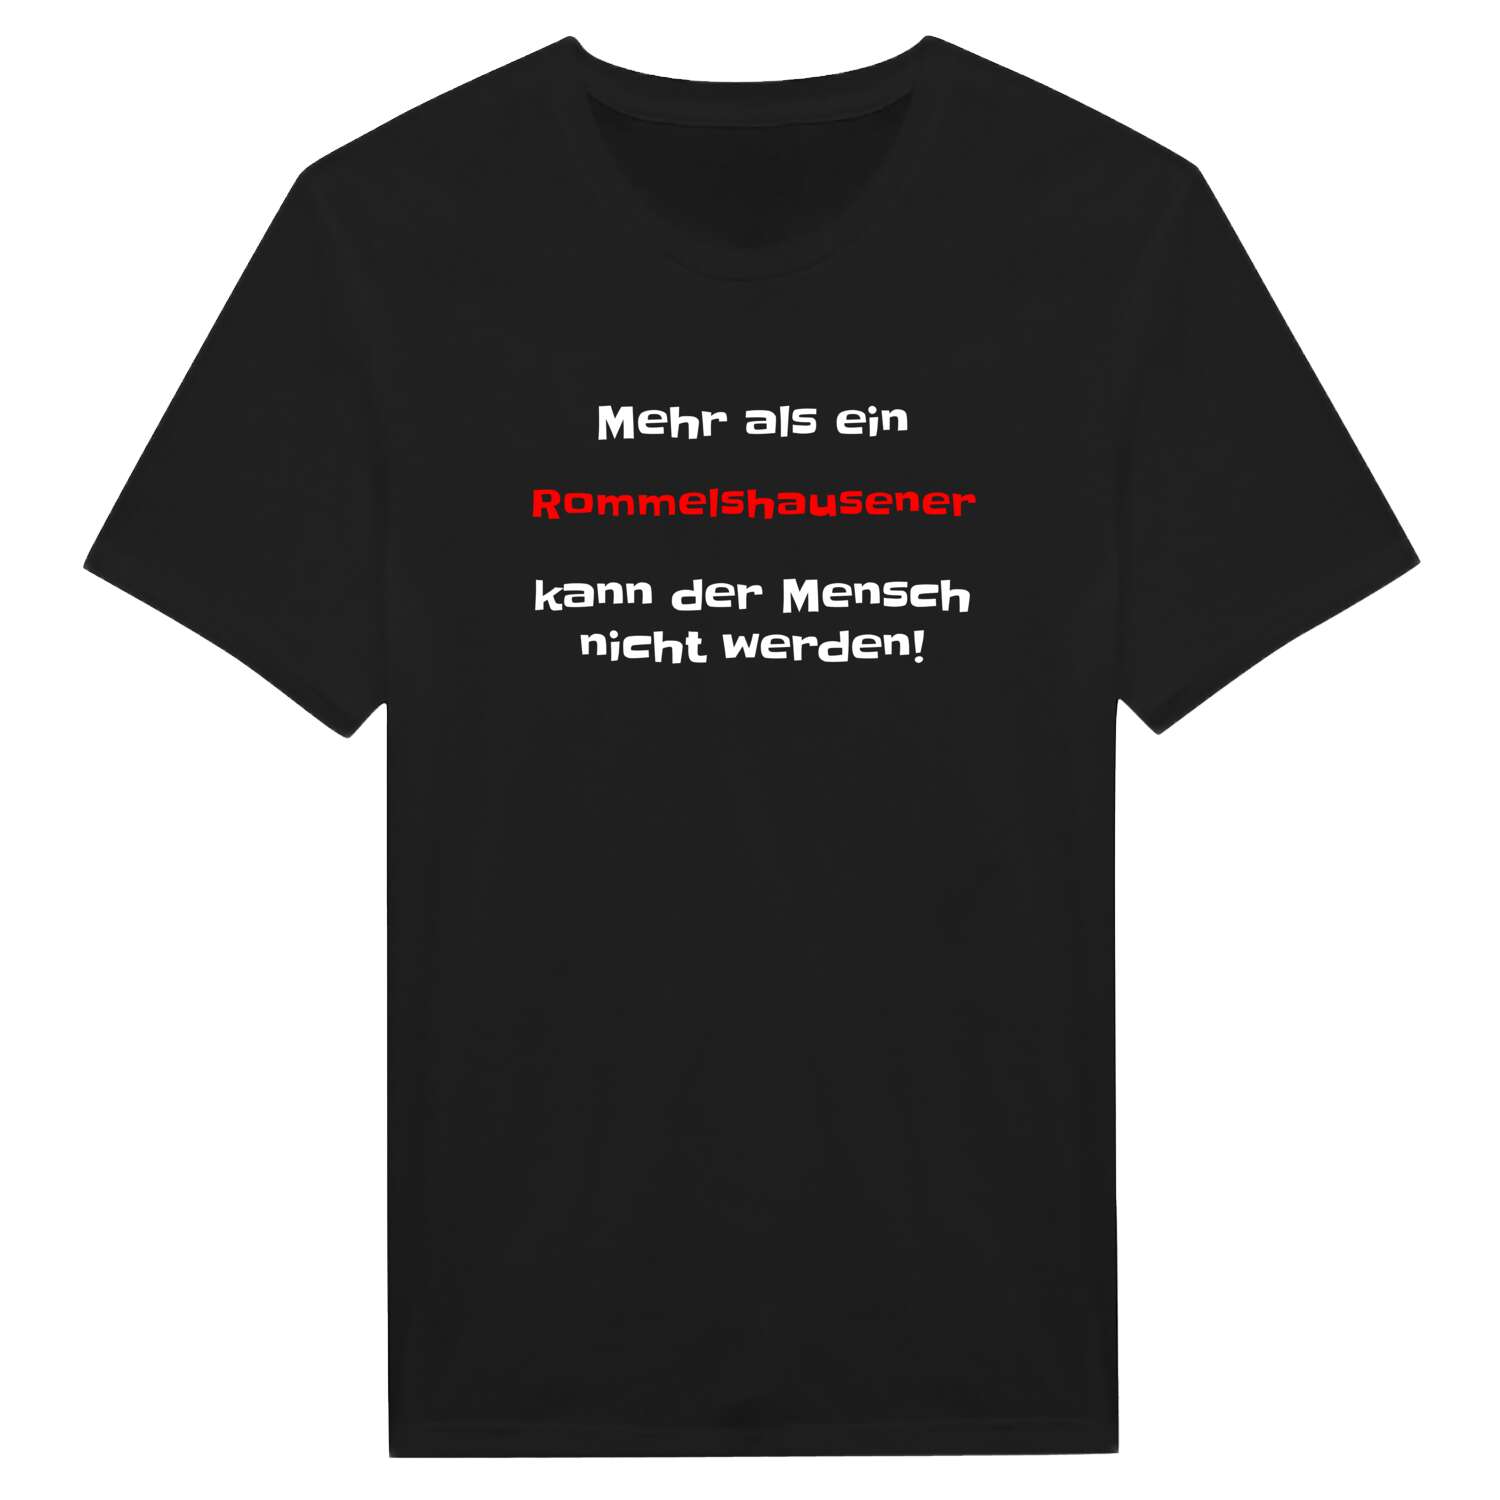 Rommelshausen T-Shirt »Mehr als ein«